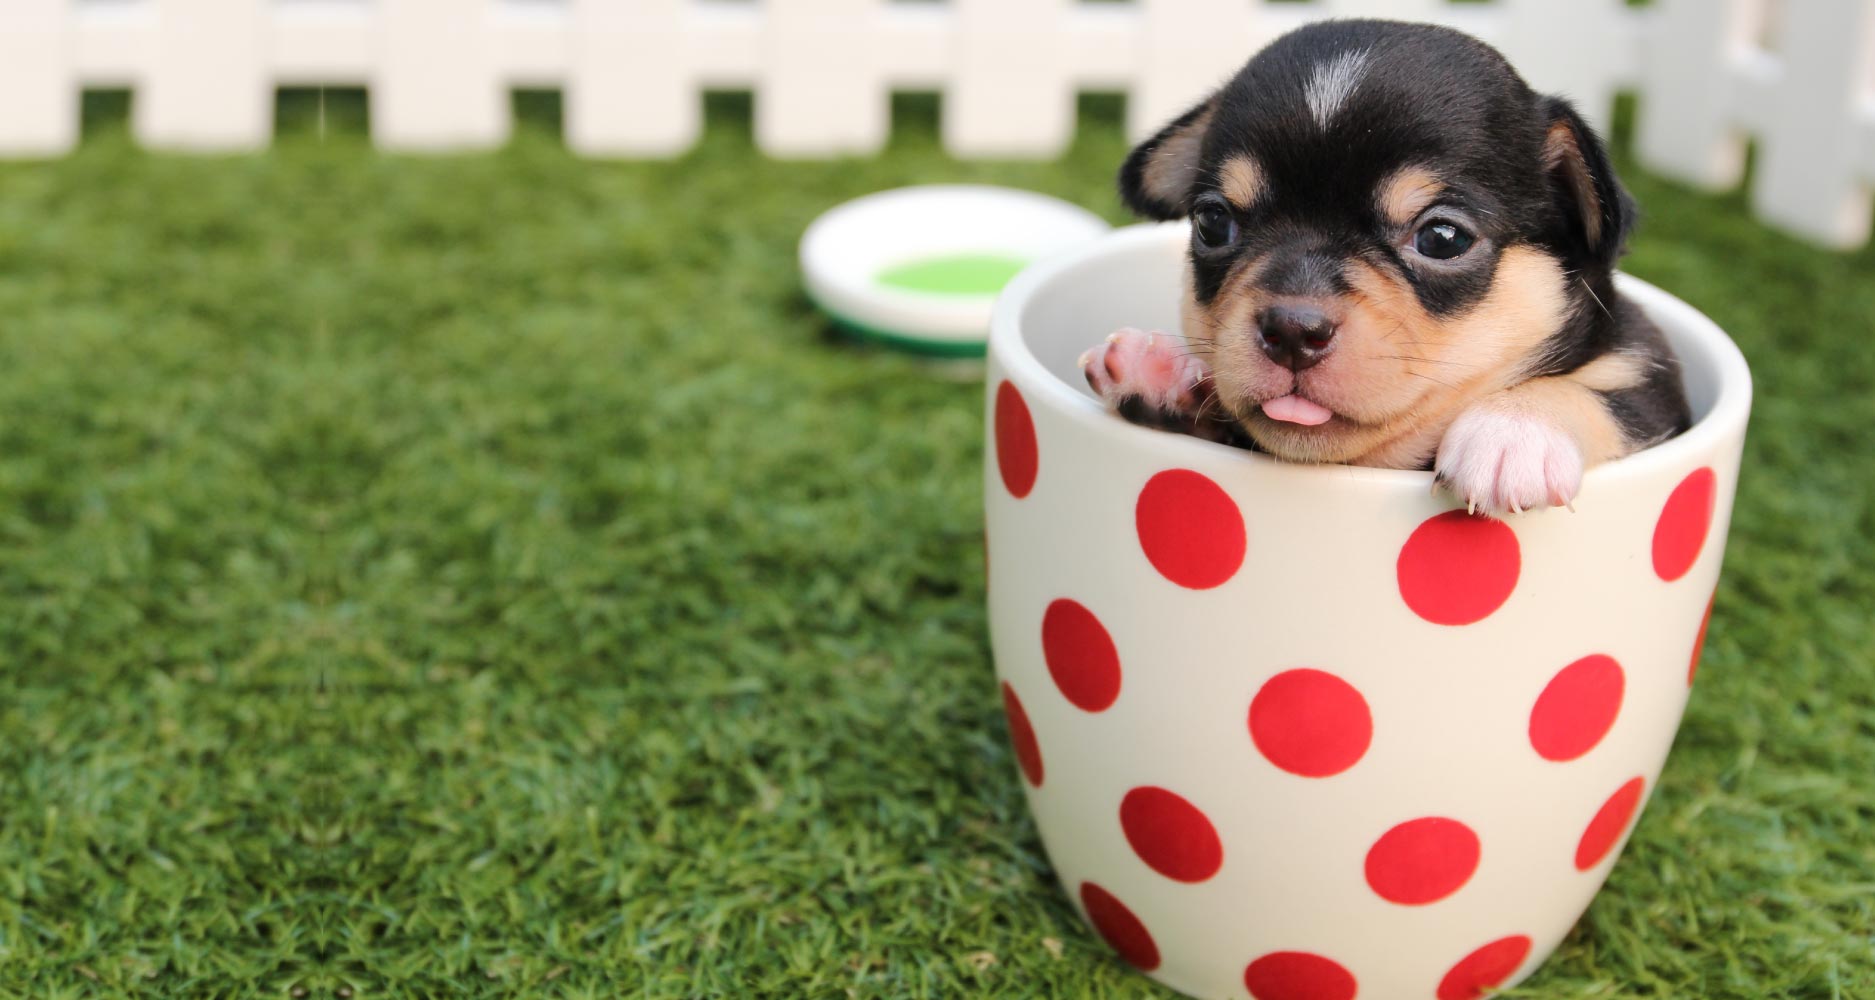 Teacup Dogs : Fashionable But Inhumane - PetlifeSA